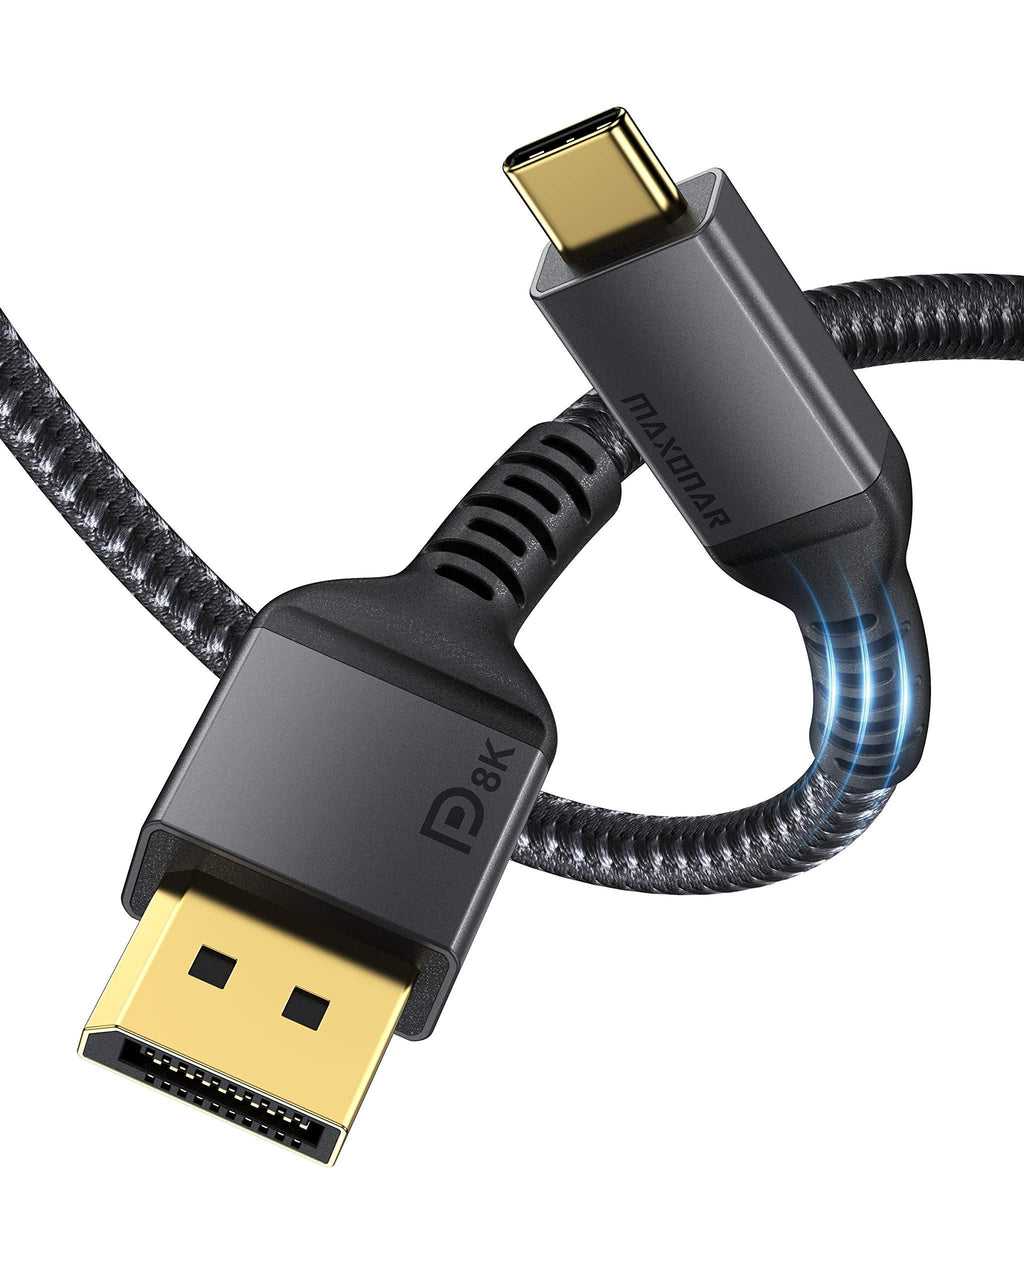 USB C to DisplayPort, Maxonar 8K 60Hz Type-C to DP Cable 6.6FT/2M(4K 60Hz 144Hz 120Hz 2K 240Hz) VESA Certified 32.4Gbps 1.4 HBR3 Alt Mode Video Adapter for M1 MacBook Pro Mac Mini, XPS 15 and More Gray